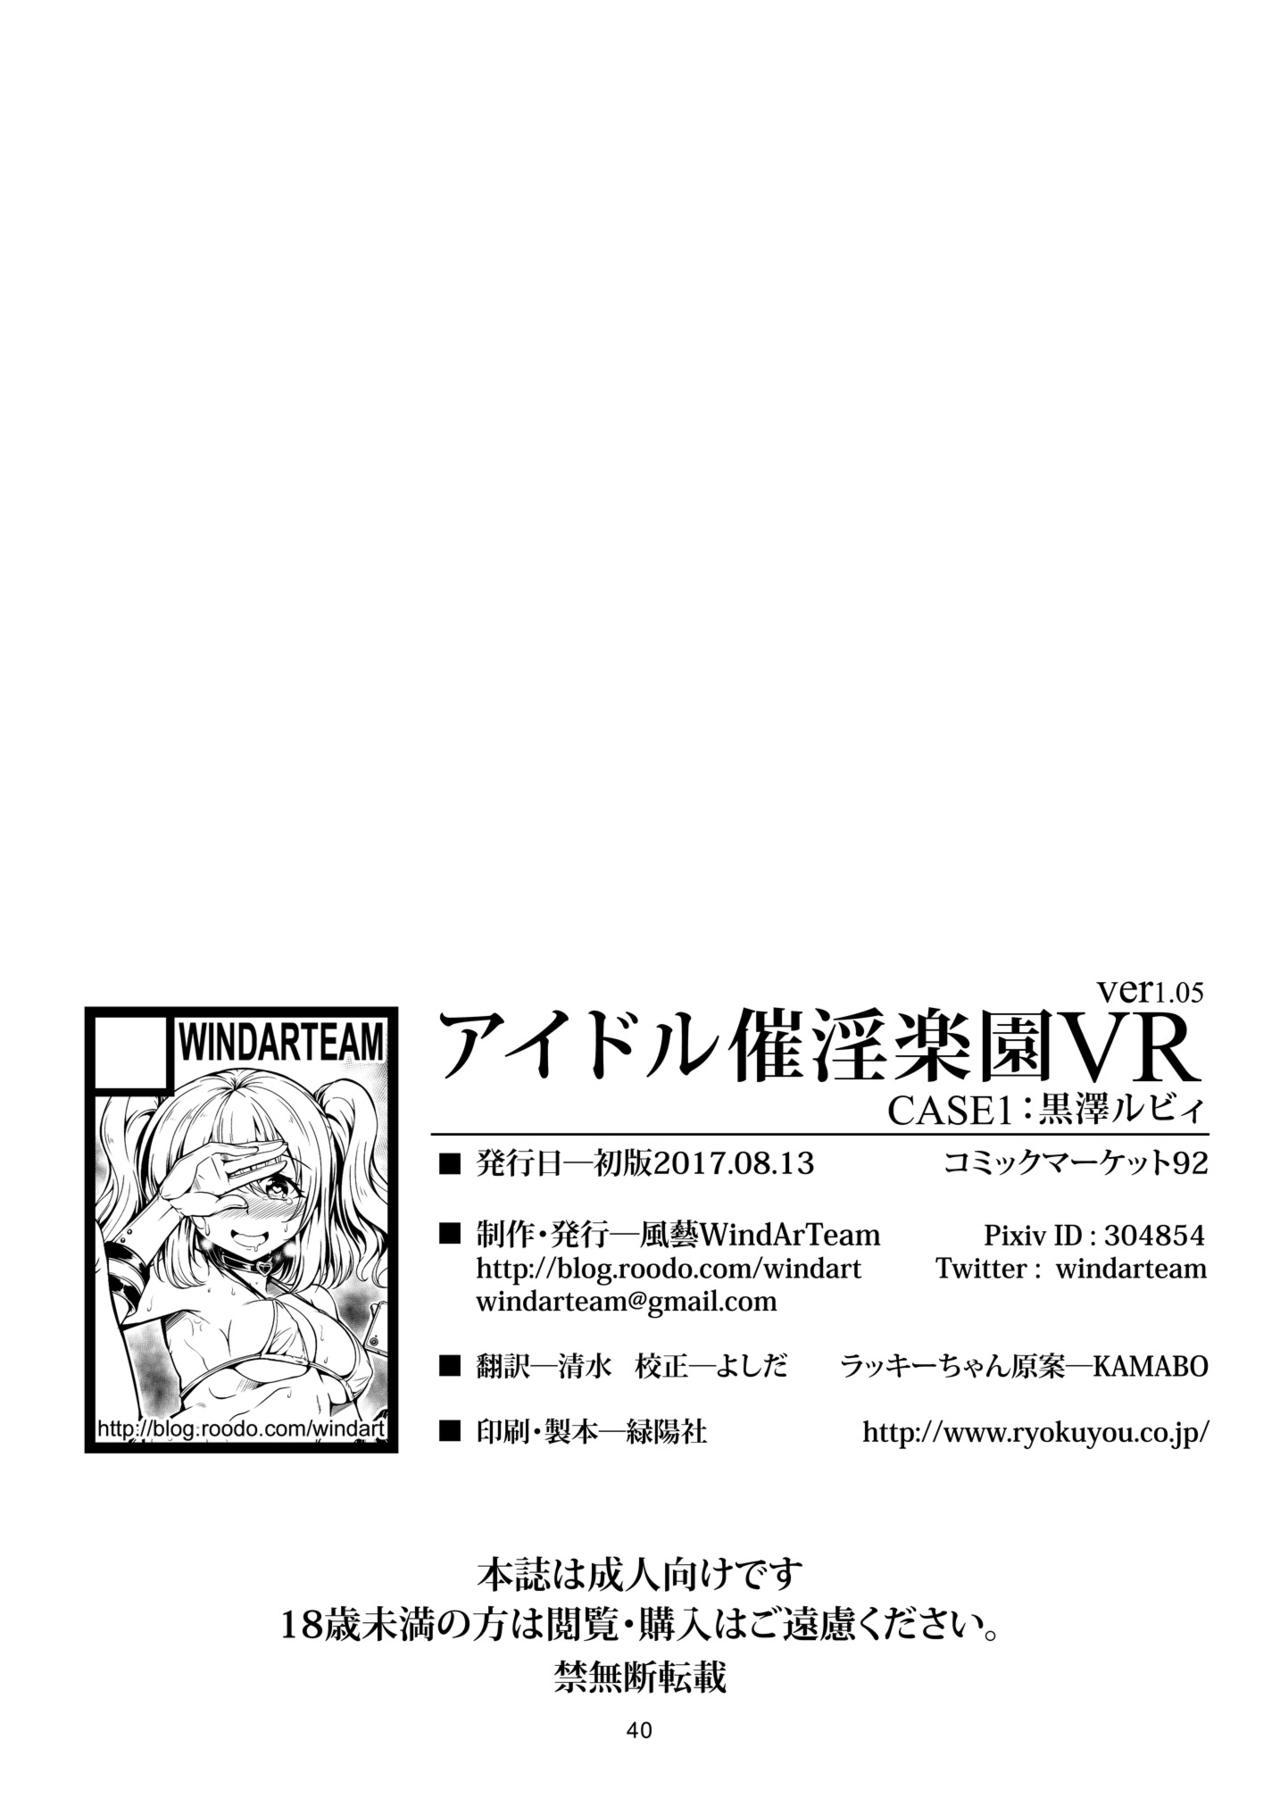 Idol Saiin Rakuen VR CASE1: Kurosawa Ruby ver 1.05 42